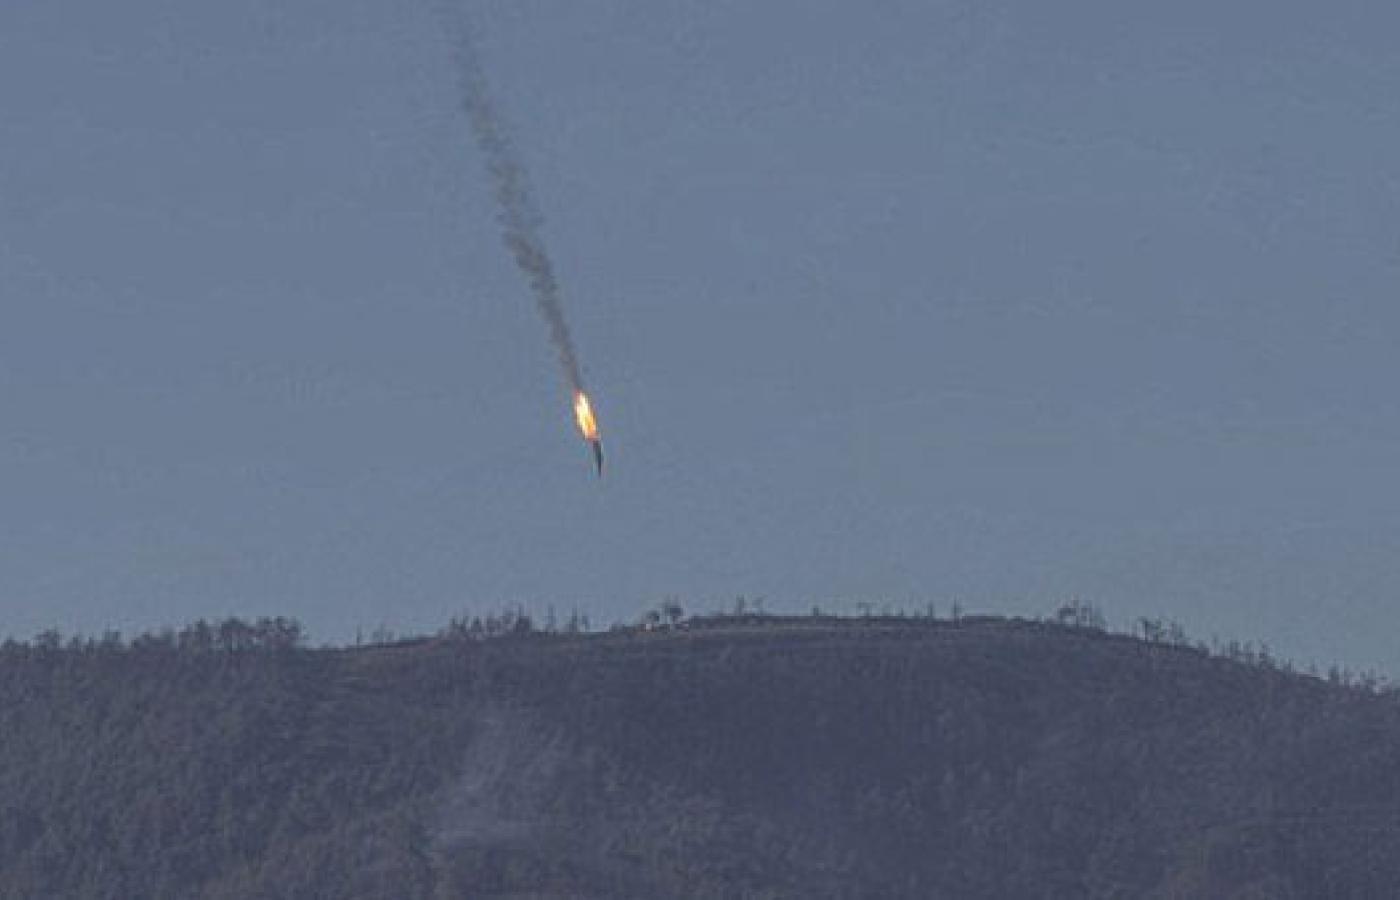 Rankiem 24 listopada rosyjski bombowiec Su-24 rozbił się na północy Syrii, zestrzelony prawdopodobnie przez turecki myśliwiec F-16.